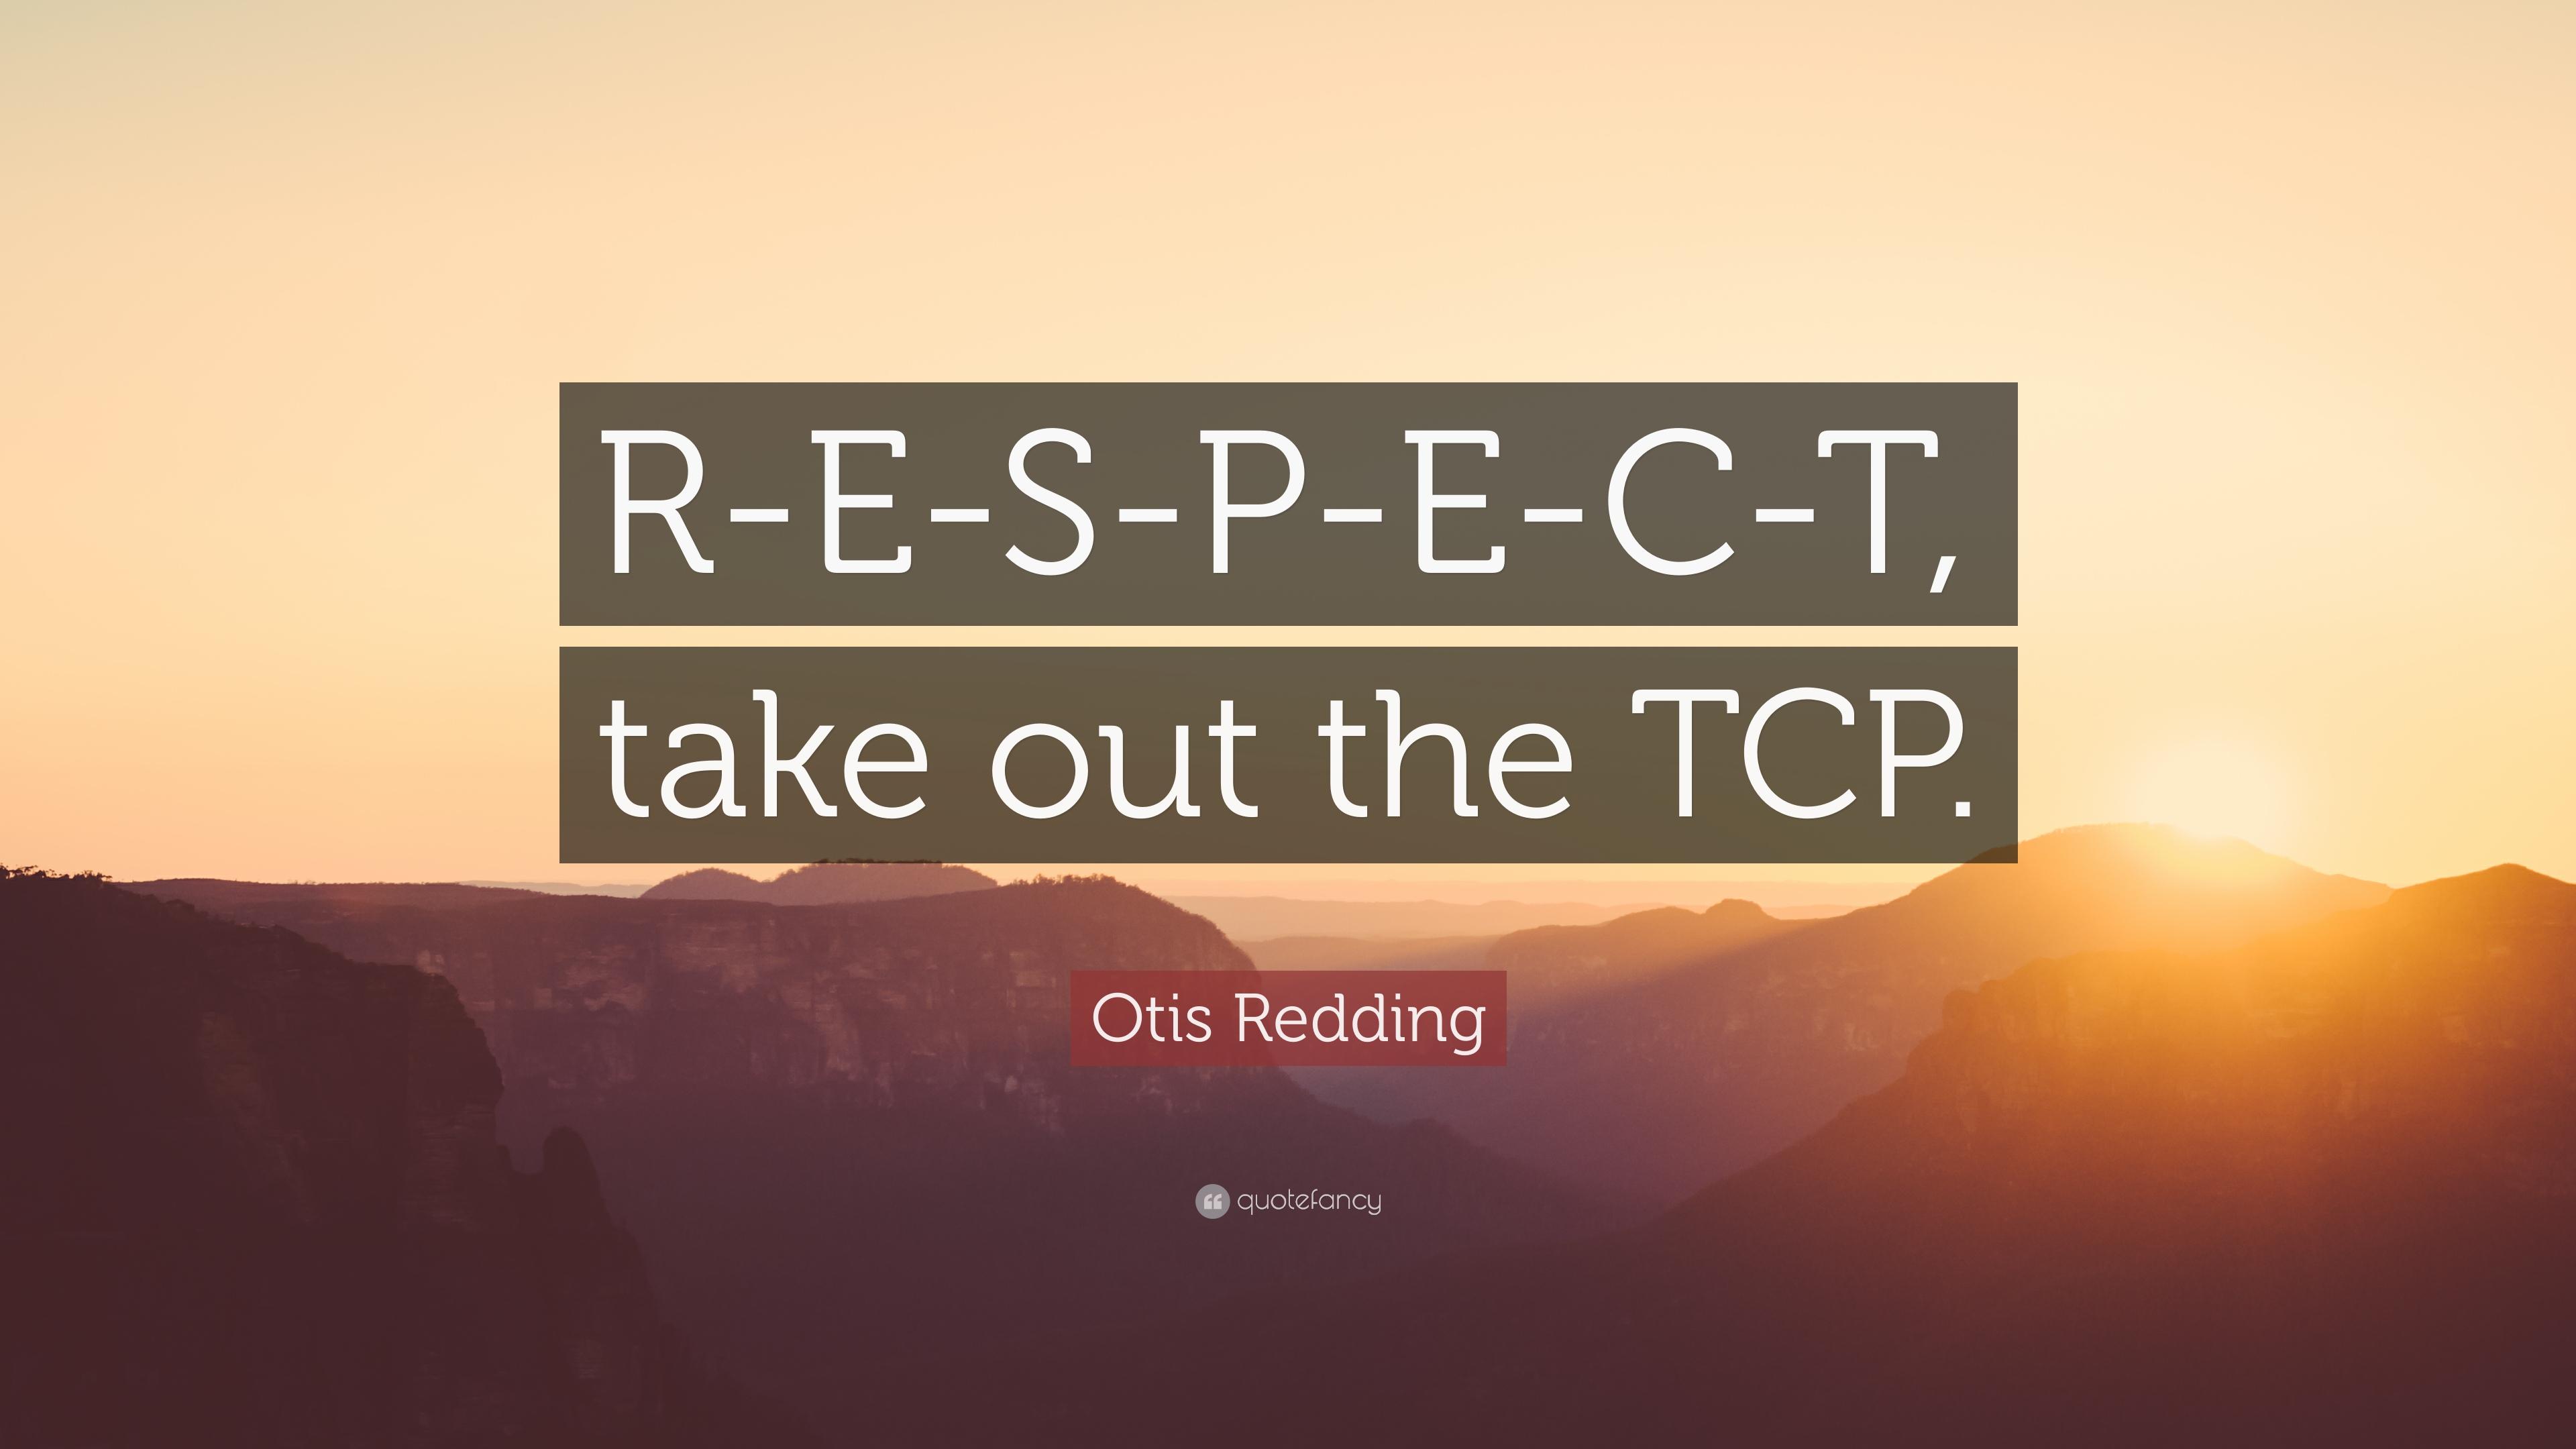 Otis Redding Quote: “R E S P E C T, Take Out The TCP.” 12